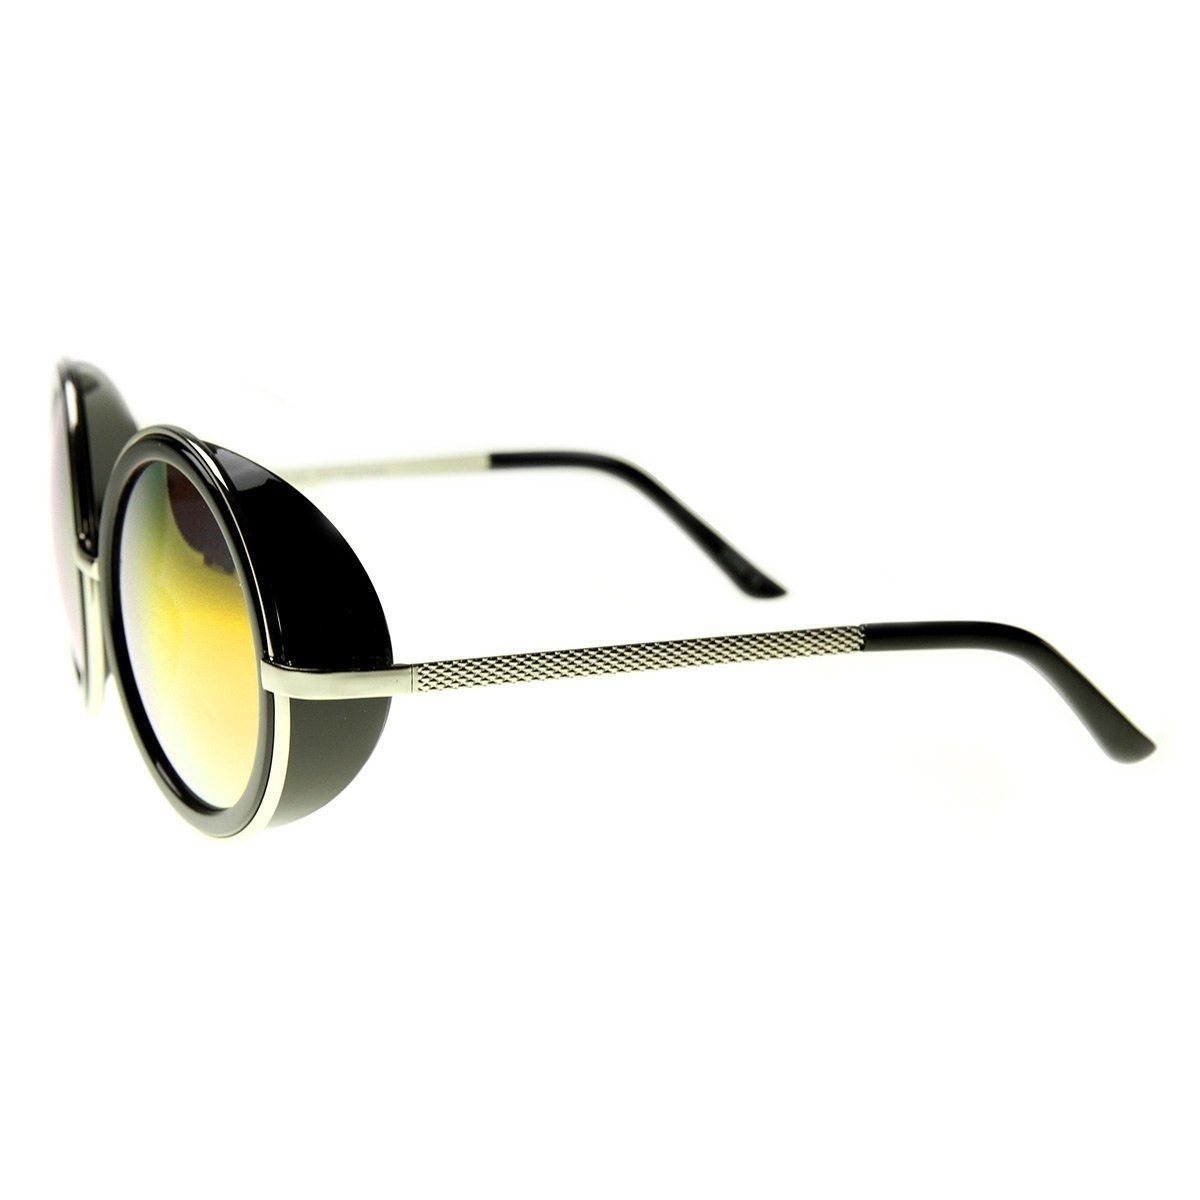 Unisex Premium Round Flash Mirror Studio Cover Sunglasses - Gold-Tortoise Sun